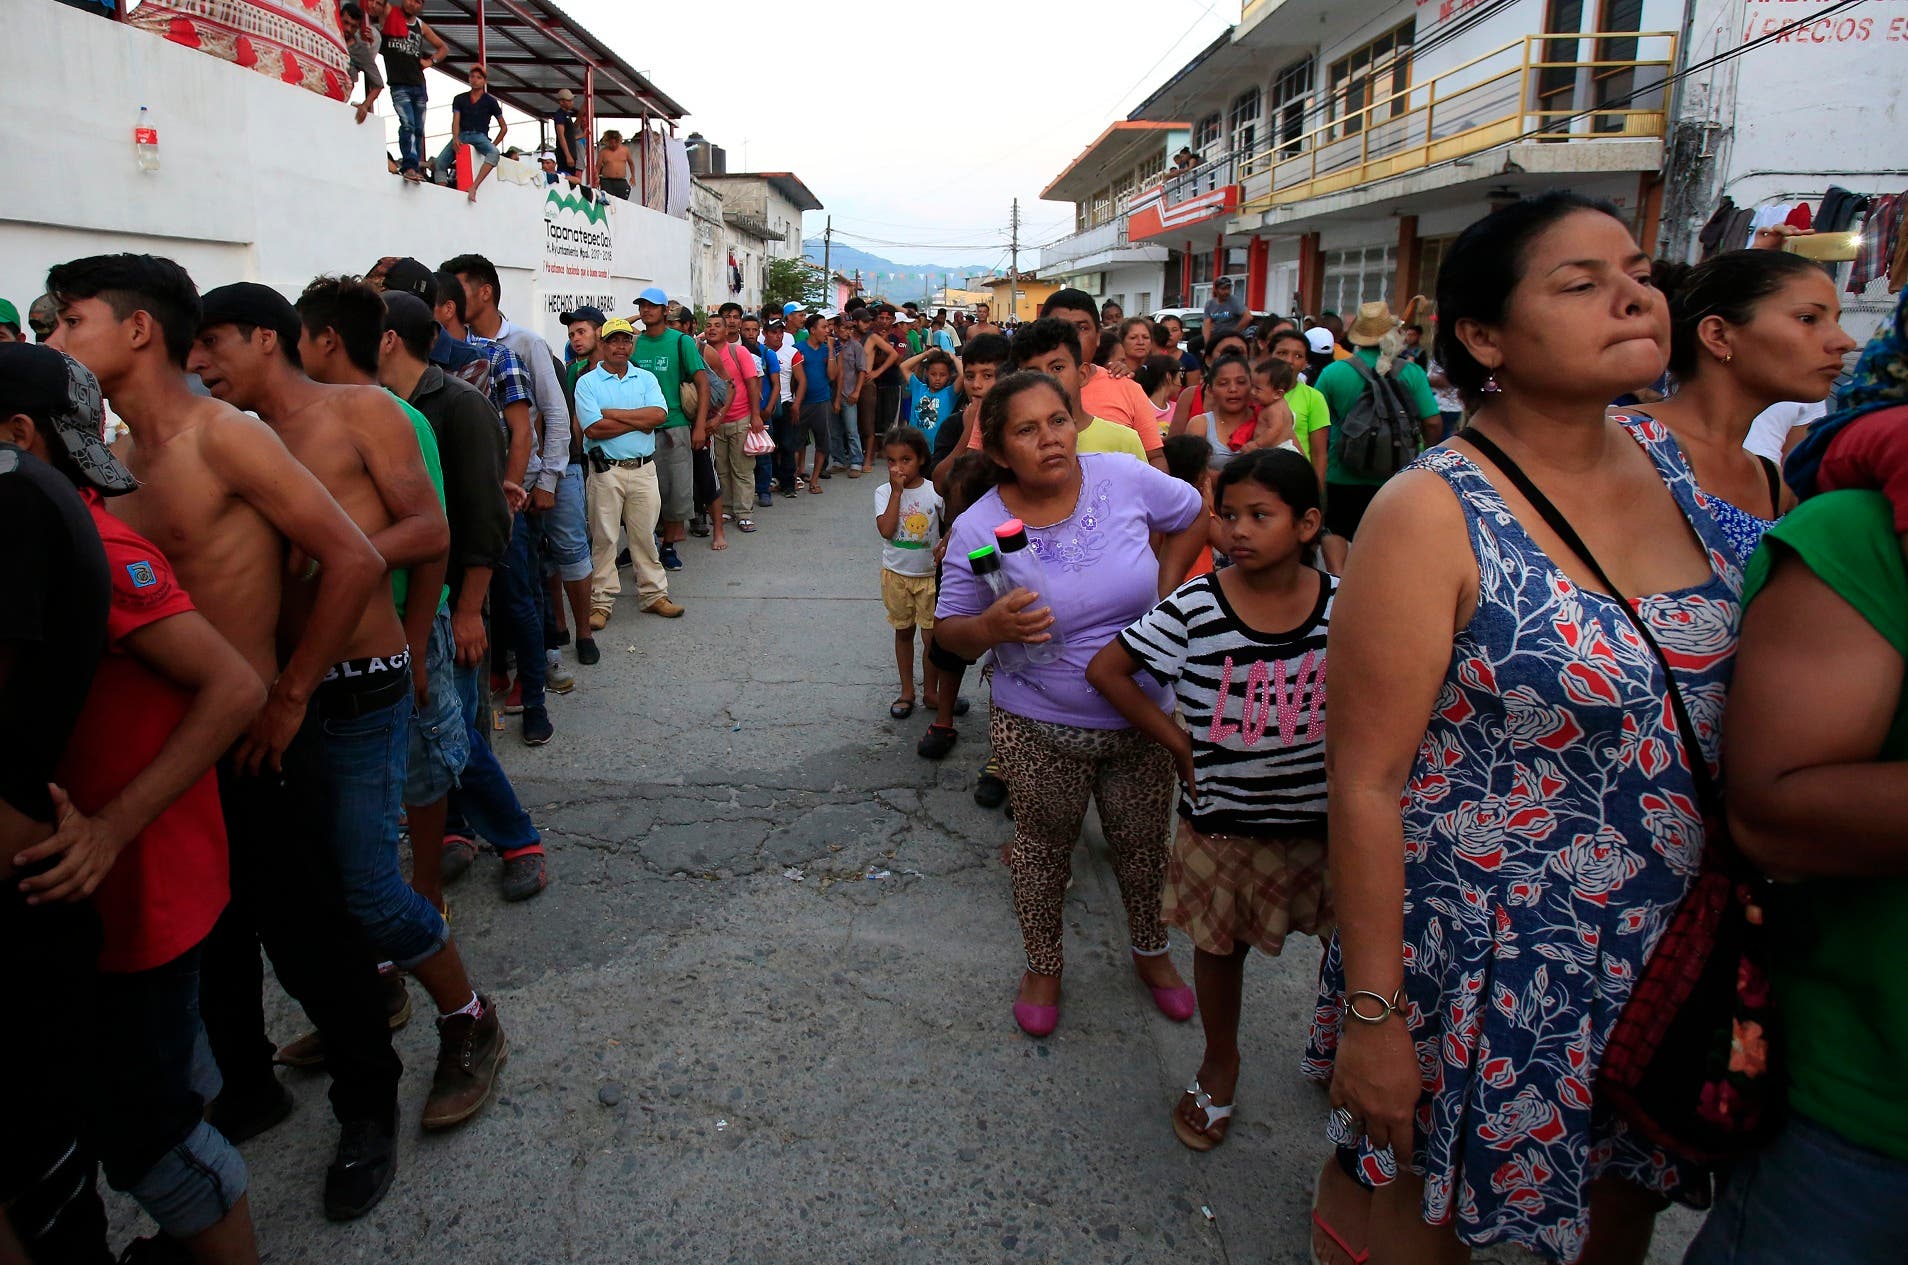 Los migrantes esperan en fila para recibir alimentos donados, mientras una caravana de centroamericanos que intentan llegar a la frontera con Estados Unidos se detiene en un dÃ­a de descanso en Tapanatepec, MÃ©xico, el domingo 28 de octubre de 2018. (AP Foto / Rebecca Blackwell)